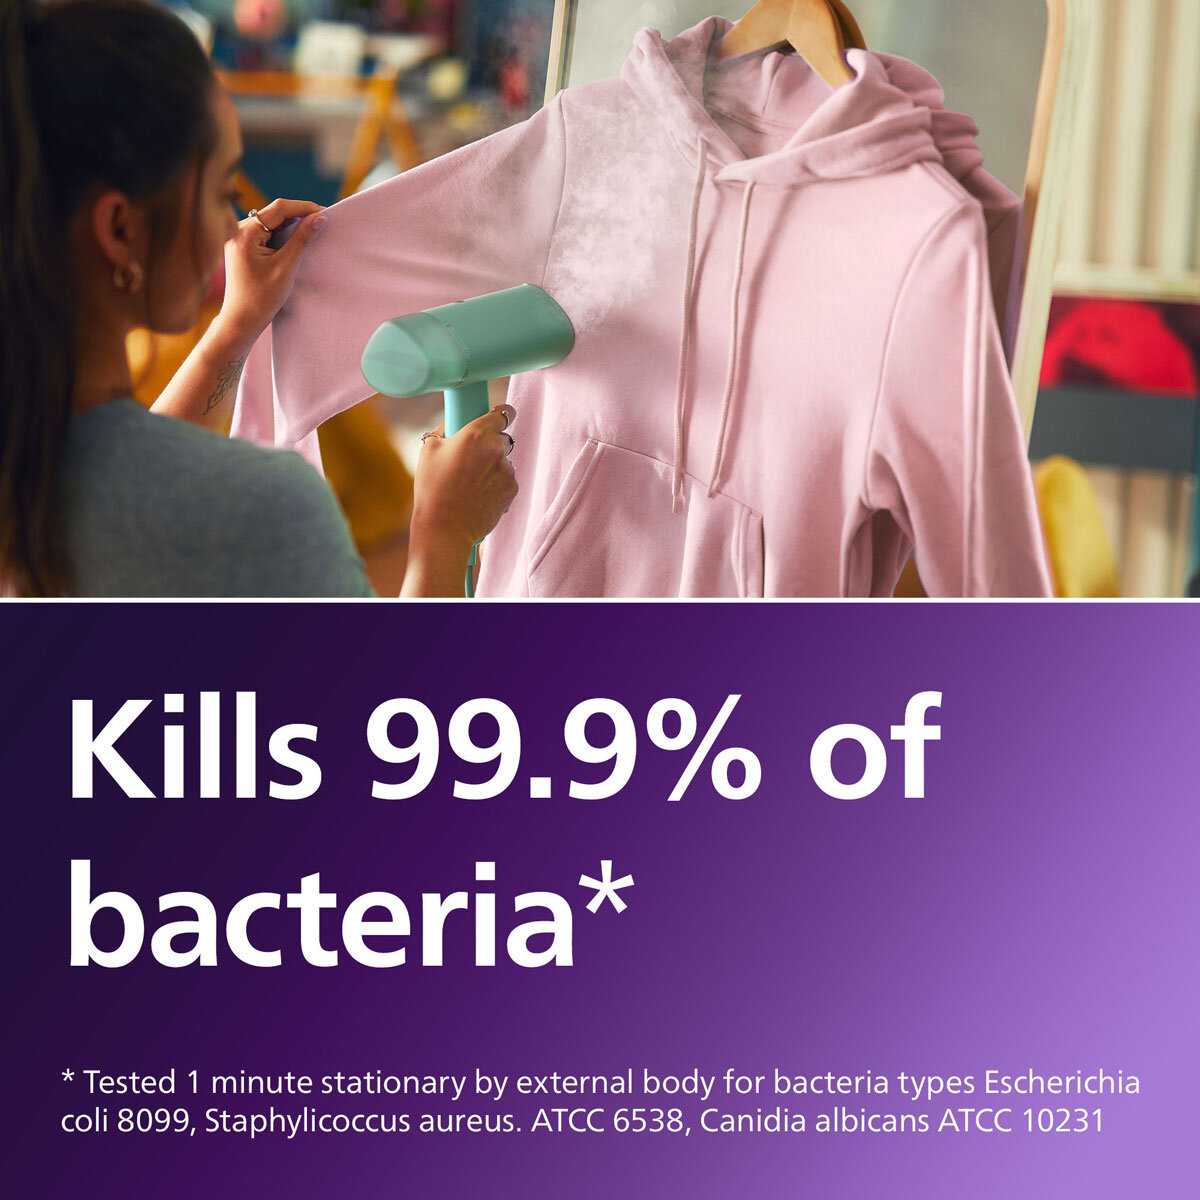 Image of Philips Handheld Steamer describing how it kills 99.99% of bacteria